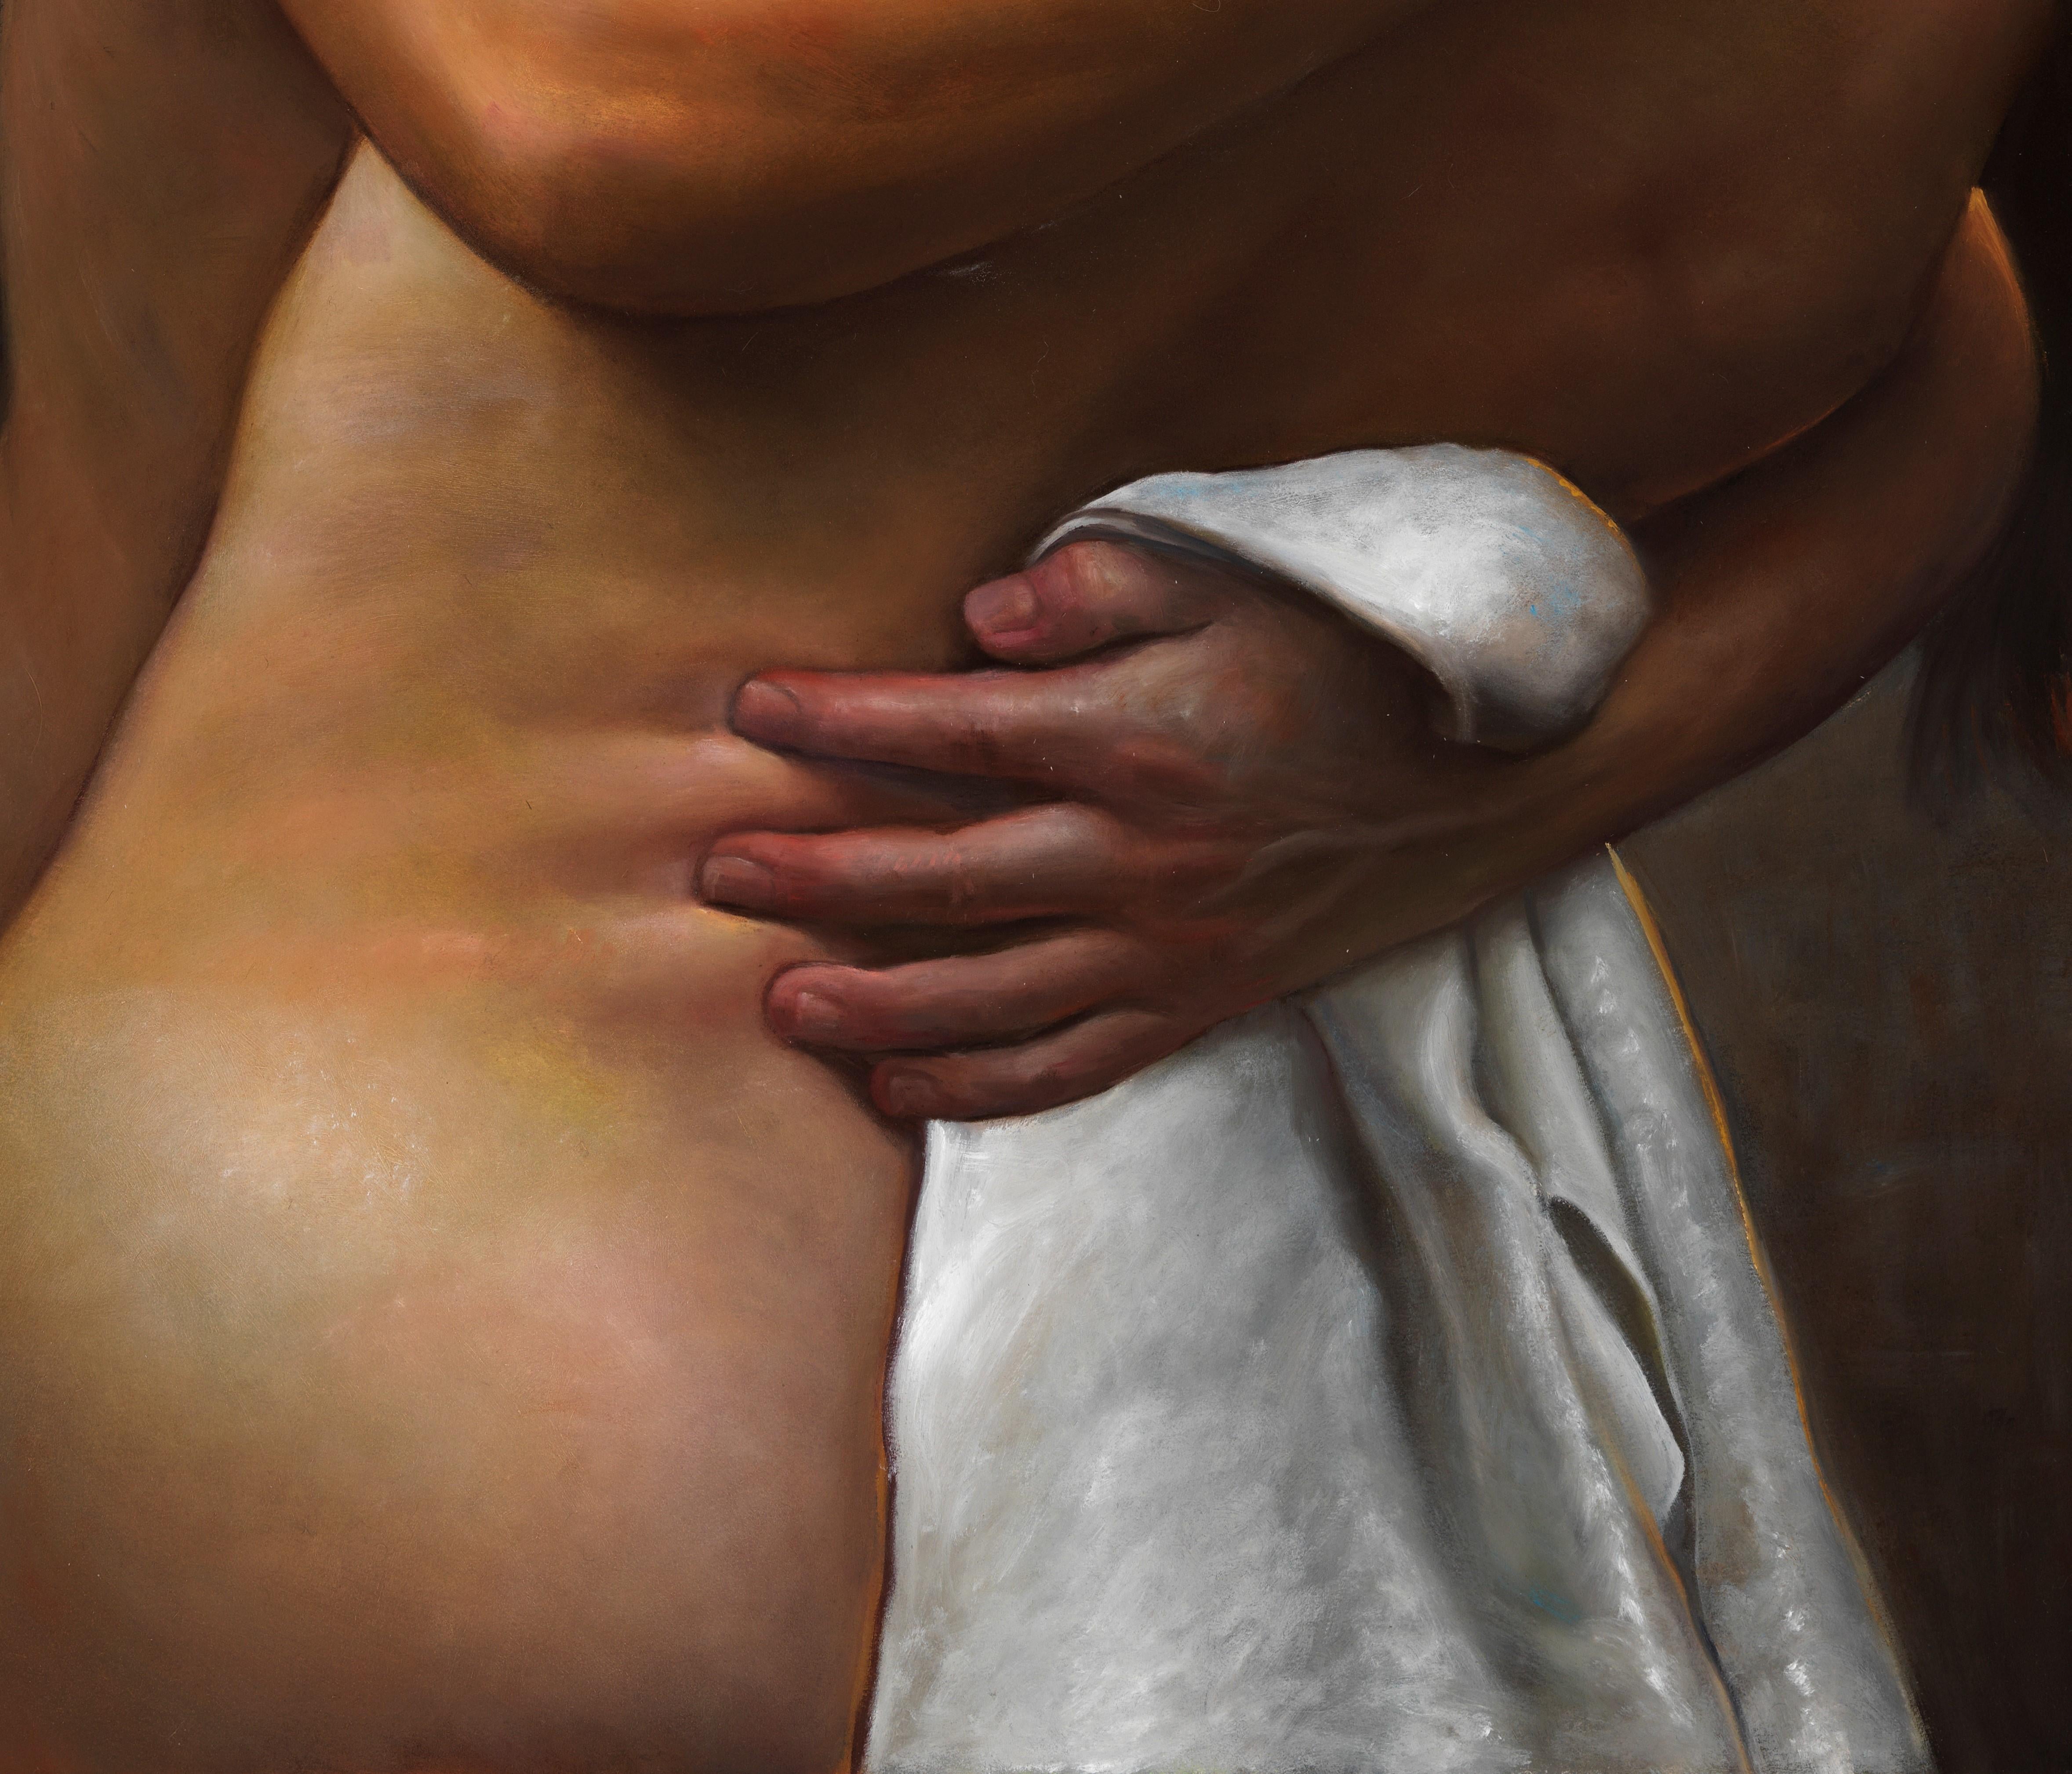 Desire - Lovers nus enlacés dans une bague passionnée, huile sur papier sur toile - Noir Nude Painting par Bruno Surdo